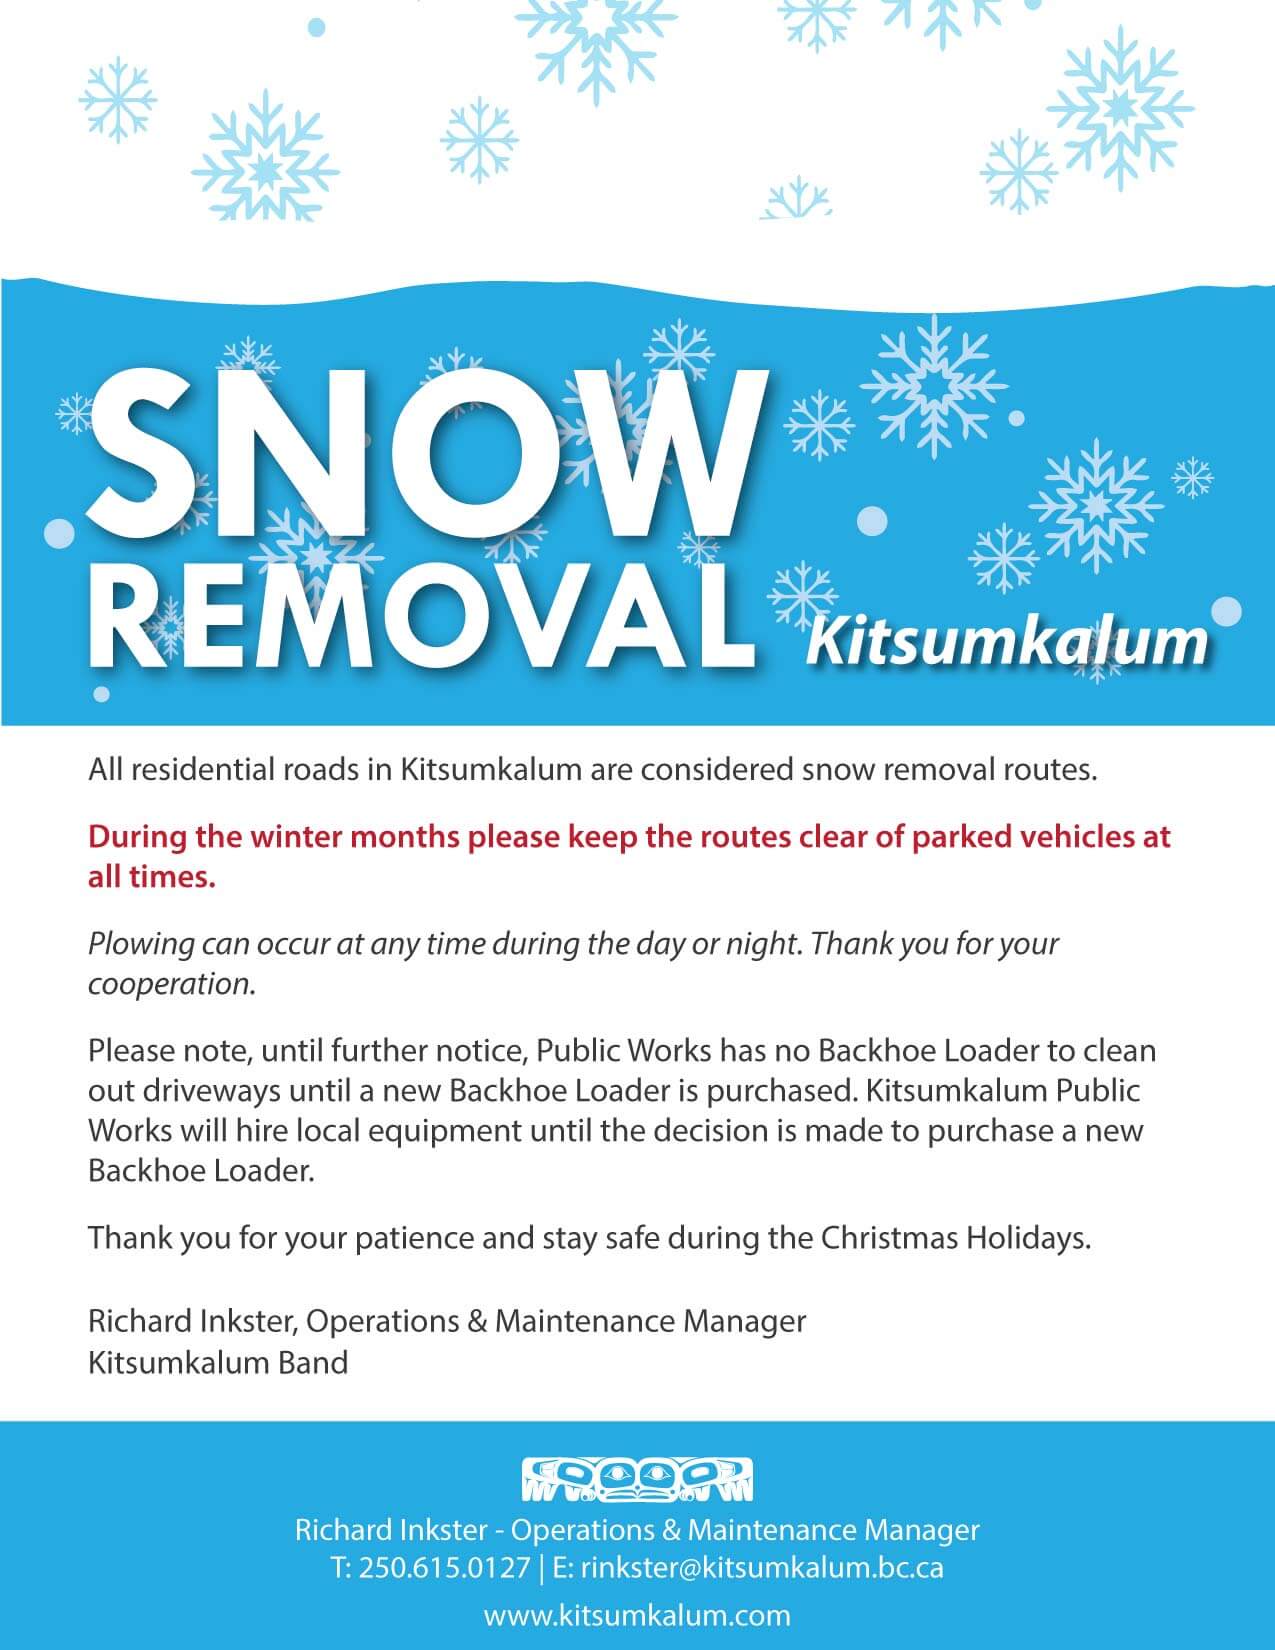 Snow Removal in Kitsumkalum